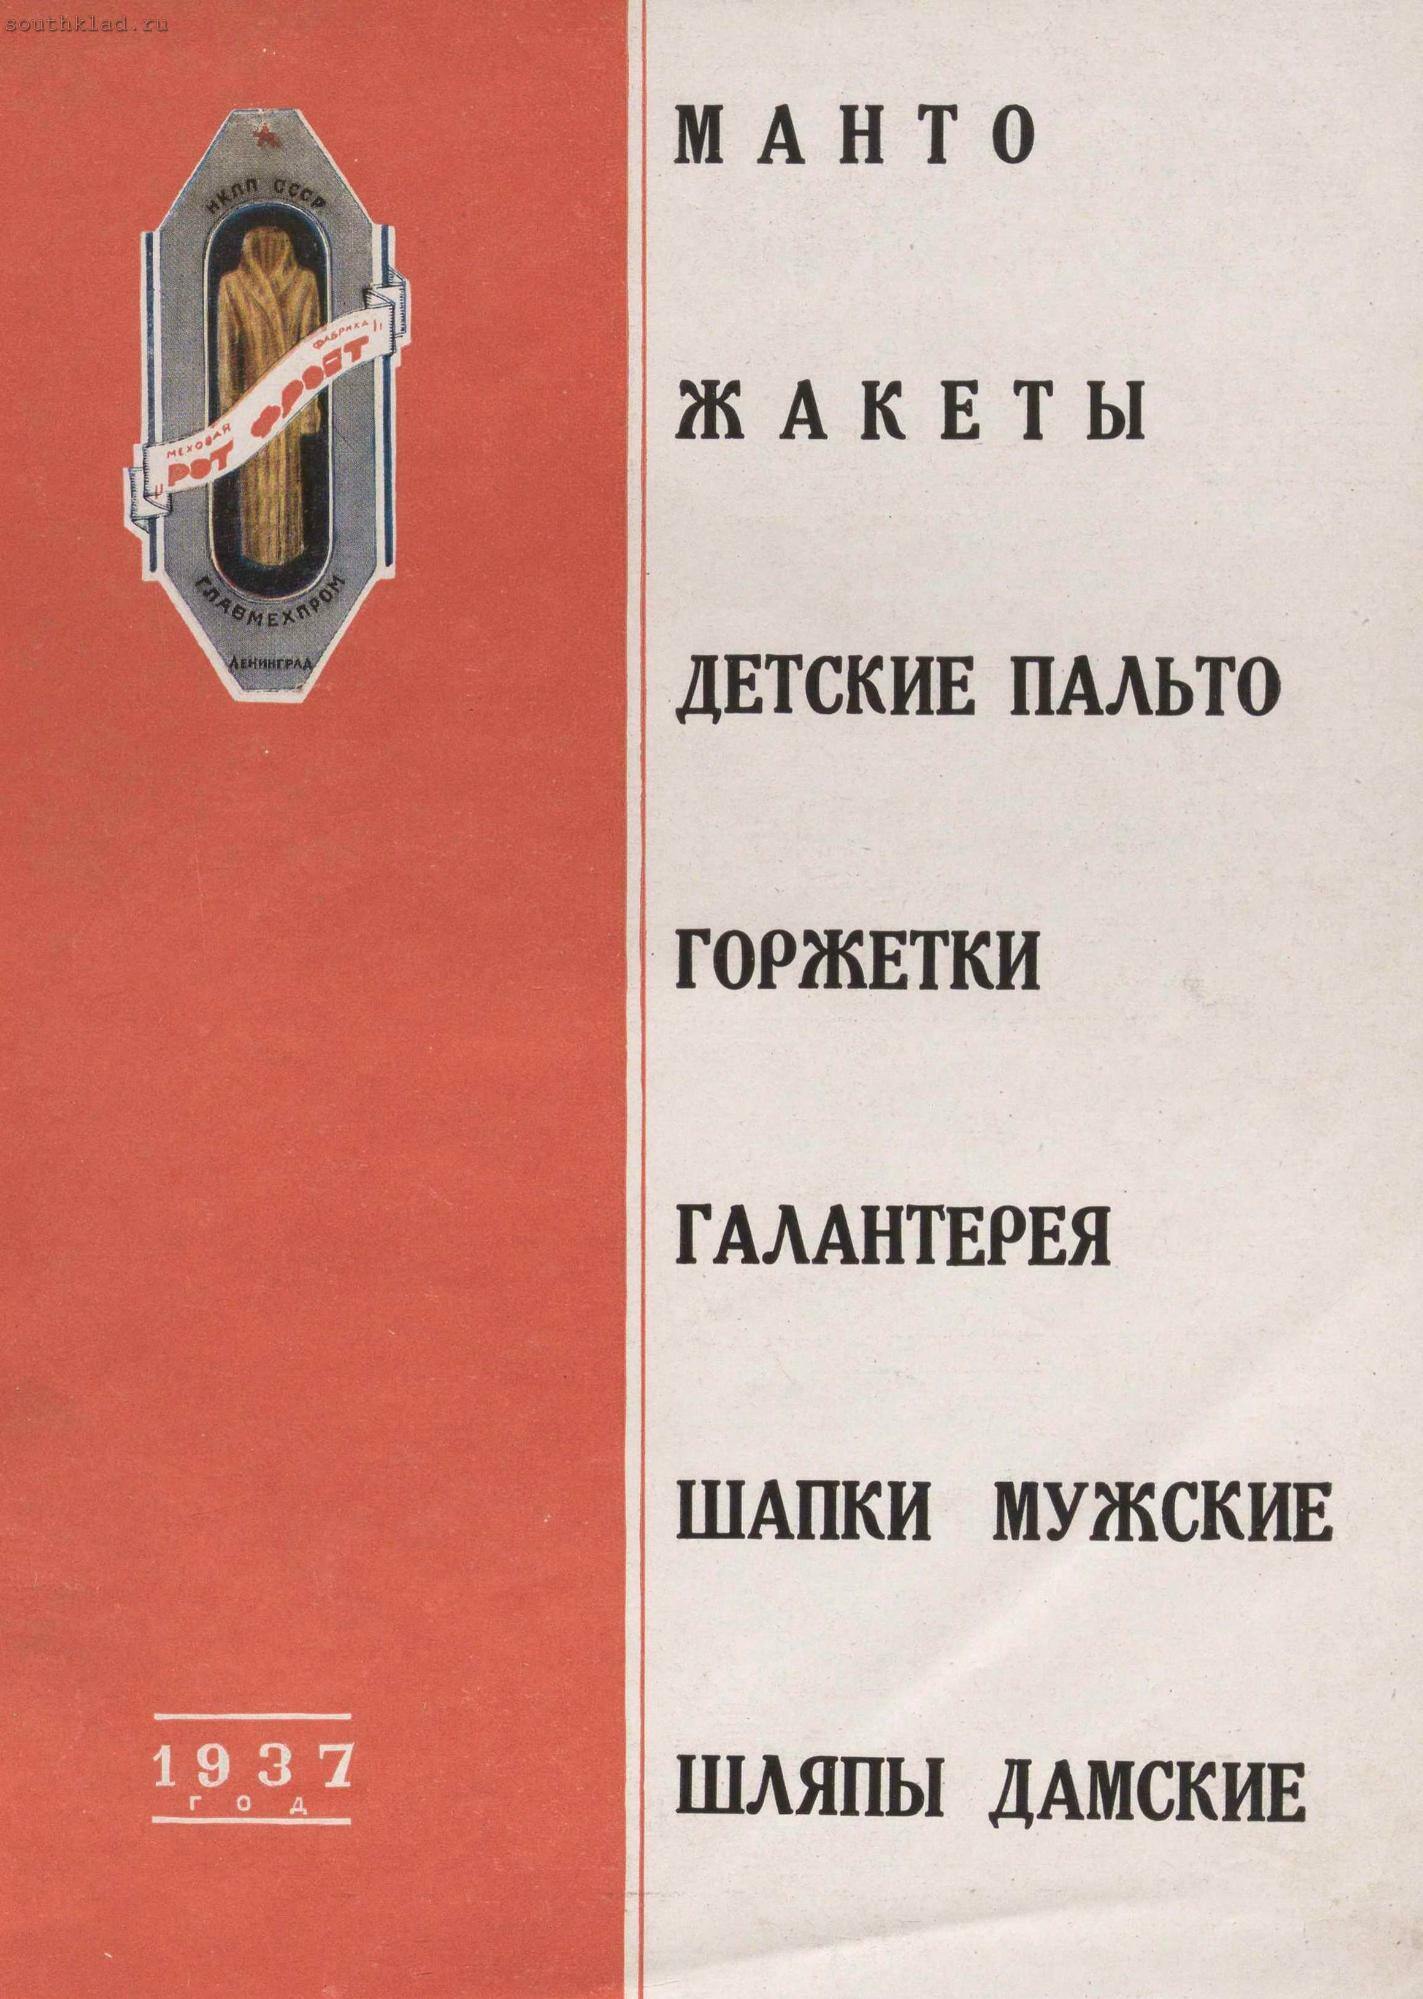 Изделия фабрики "Рот-фронт" 1936-37 года История,Мода,СССР